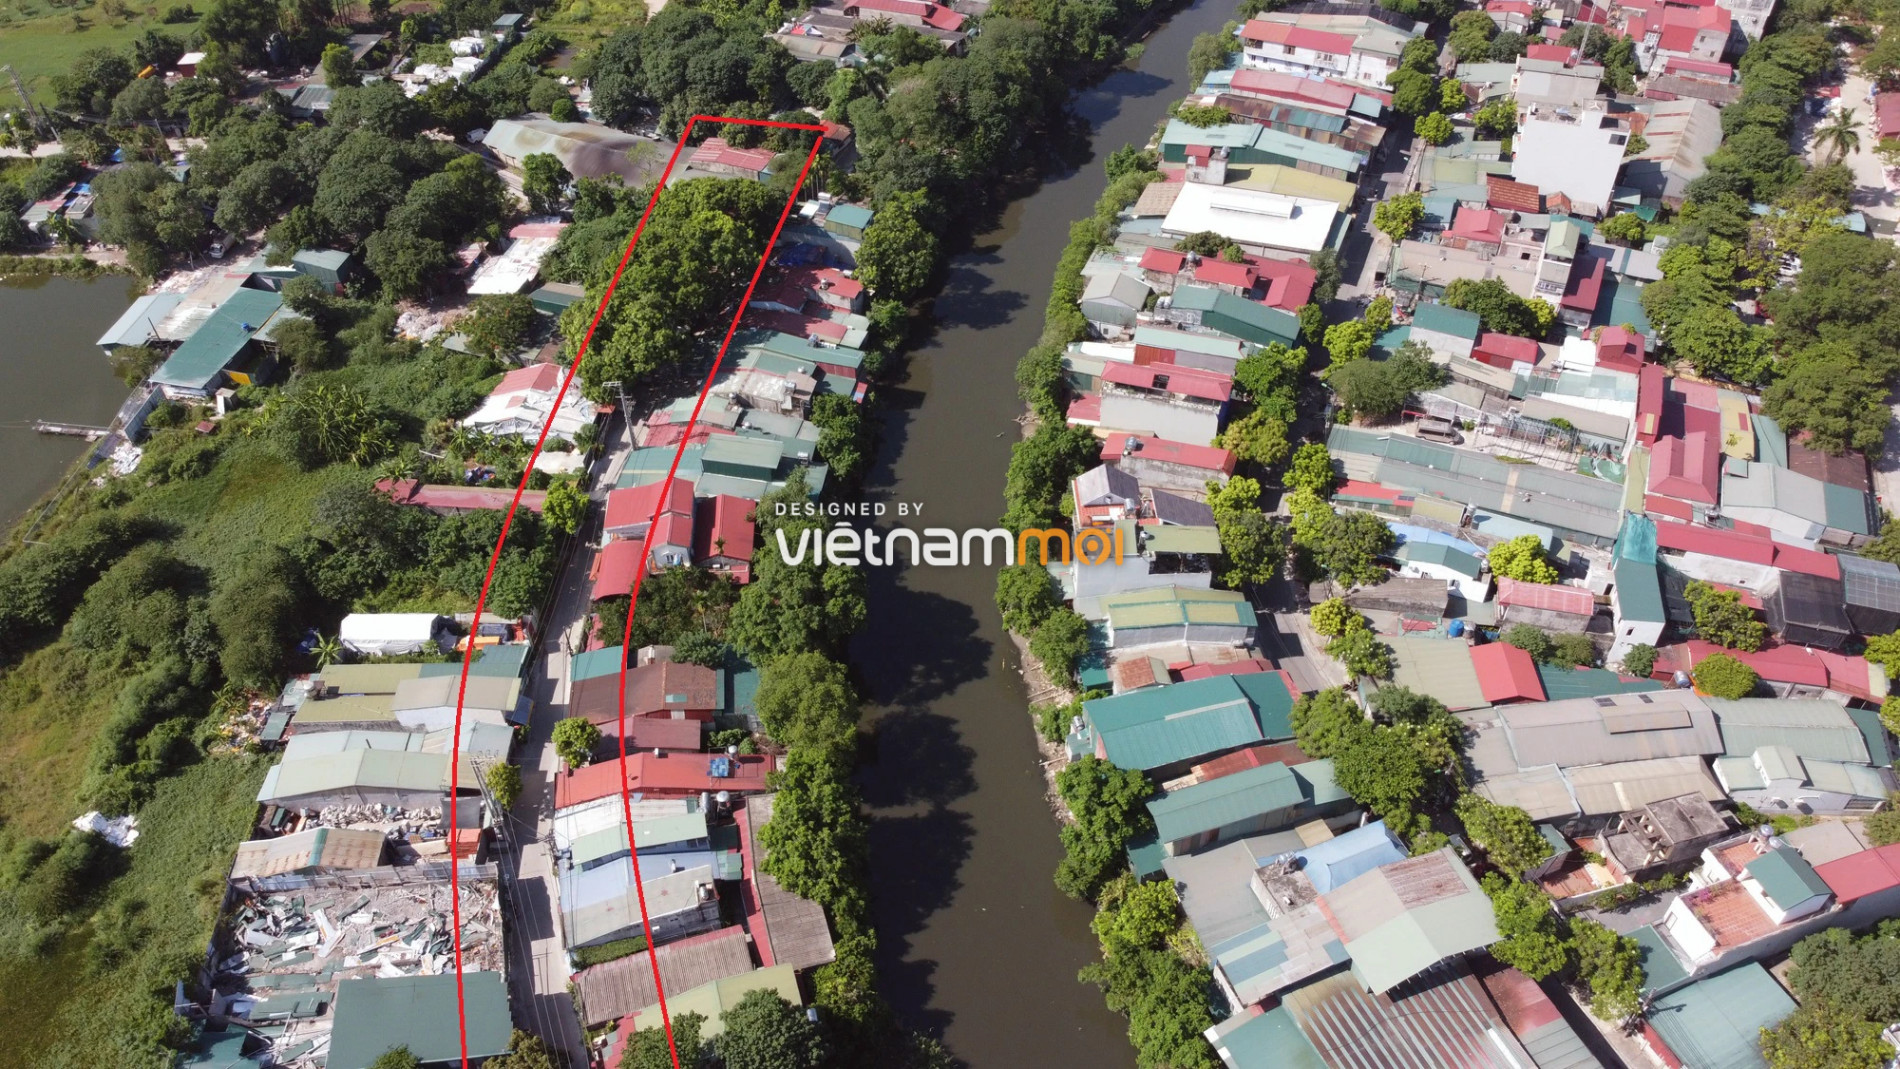 Những khu đất sắp thu hồi để mở đường ở phường Cầu Diễn, Nam Từ Liêm, Hà Nội (phần 1) - Ảnh 7.